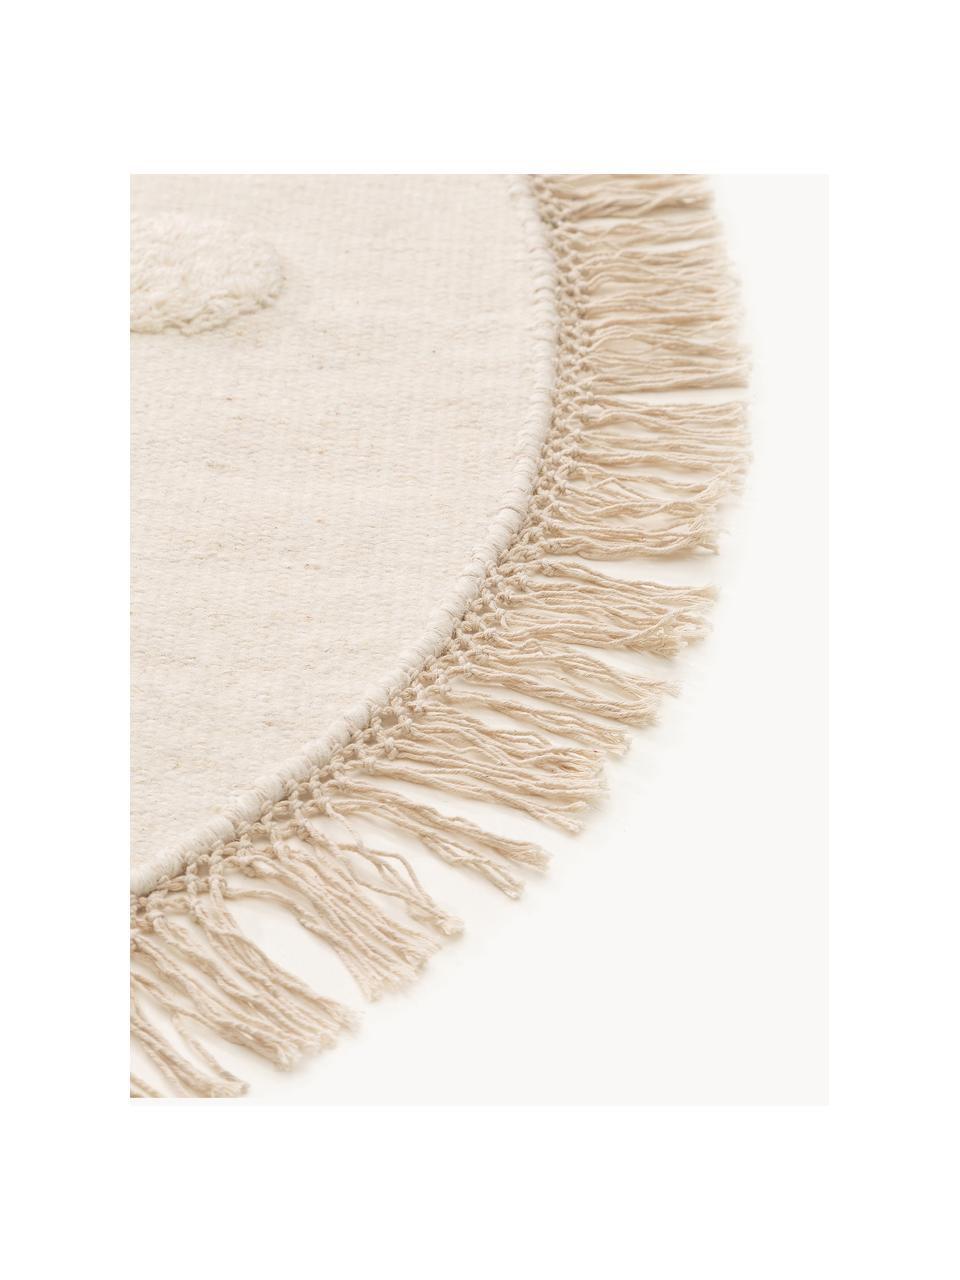 Ručne tkaný okrúhly detský vlnený koberec Carlson, 80 % vlna, 20 %  polyester

V prvých týždňoch používania môžu vlnené koberce uvoľňovať vlákna, tento jav zmizne po niekoľkých týždňoch používania, Krémovobiela, Ø 120 cm (veľkosť S)